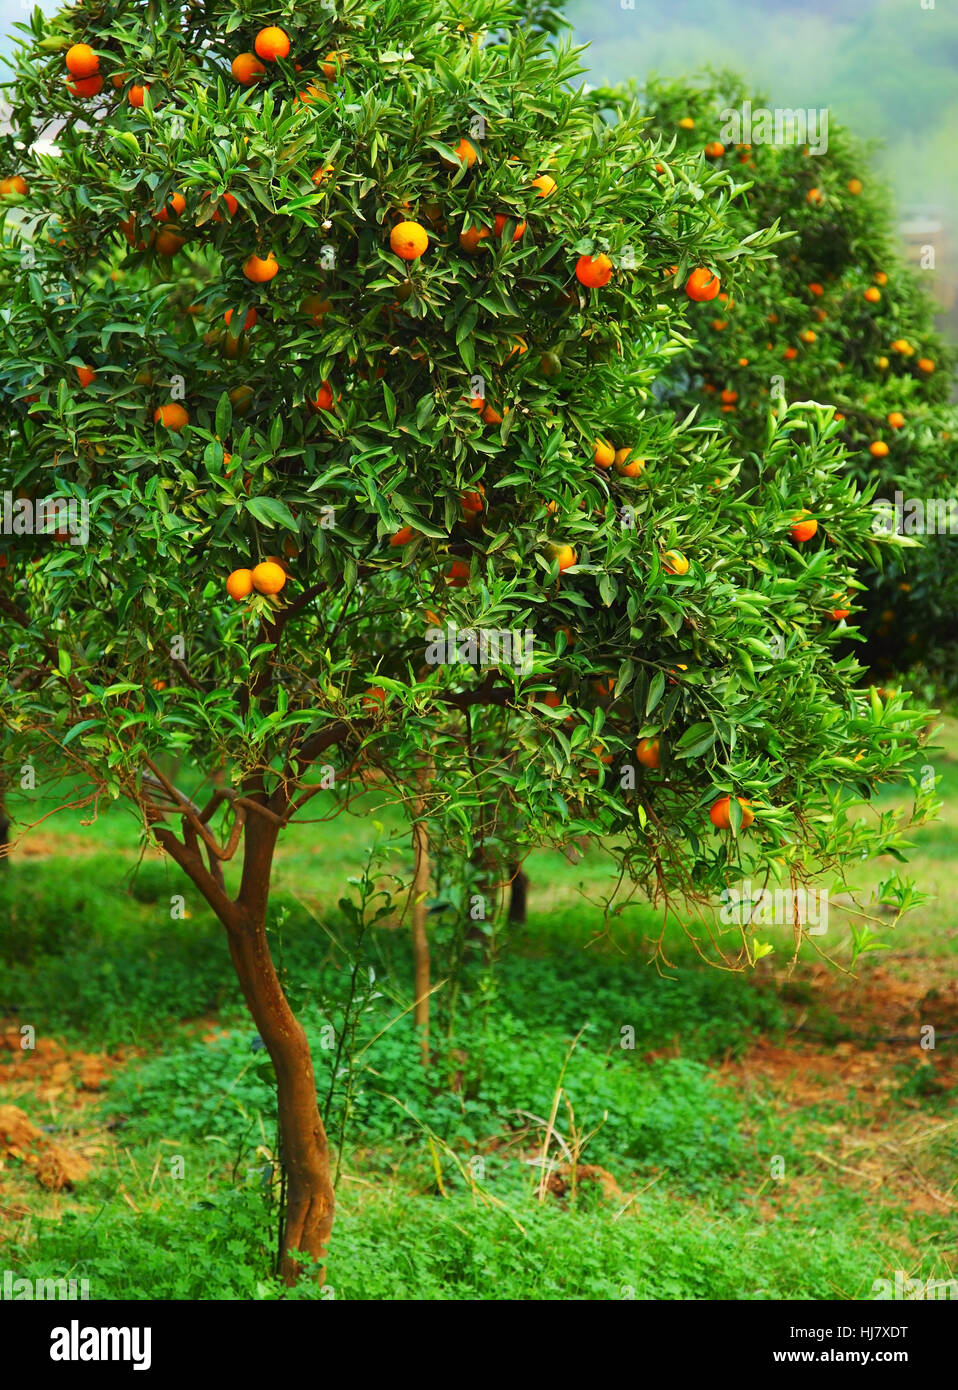 Giardino, agricoltura, allevamento, mature, frutta tropicale, Orange, cibo, aliment, Foto Stock